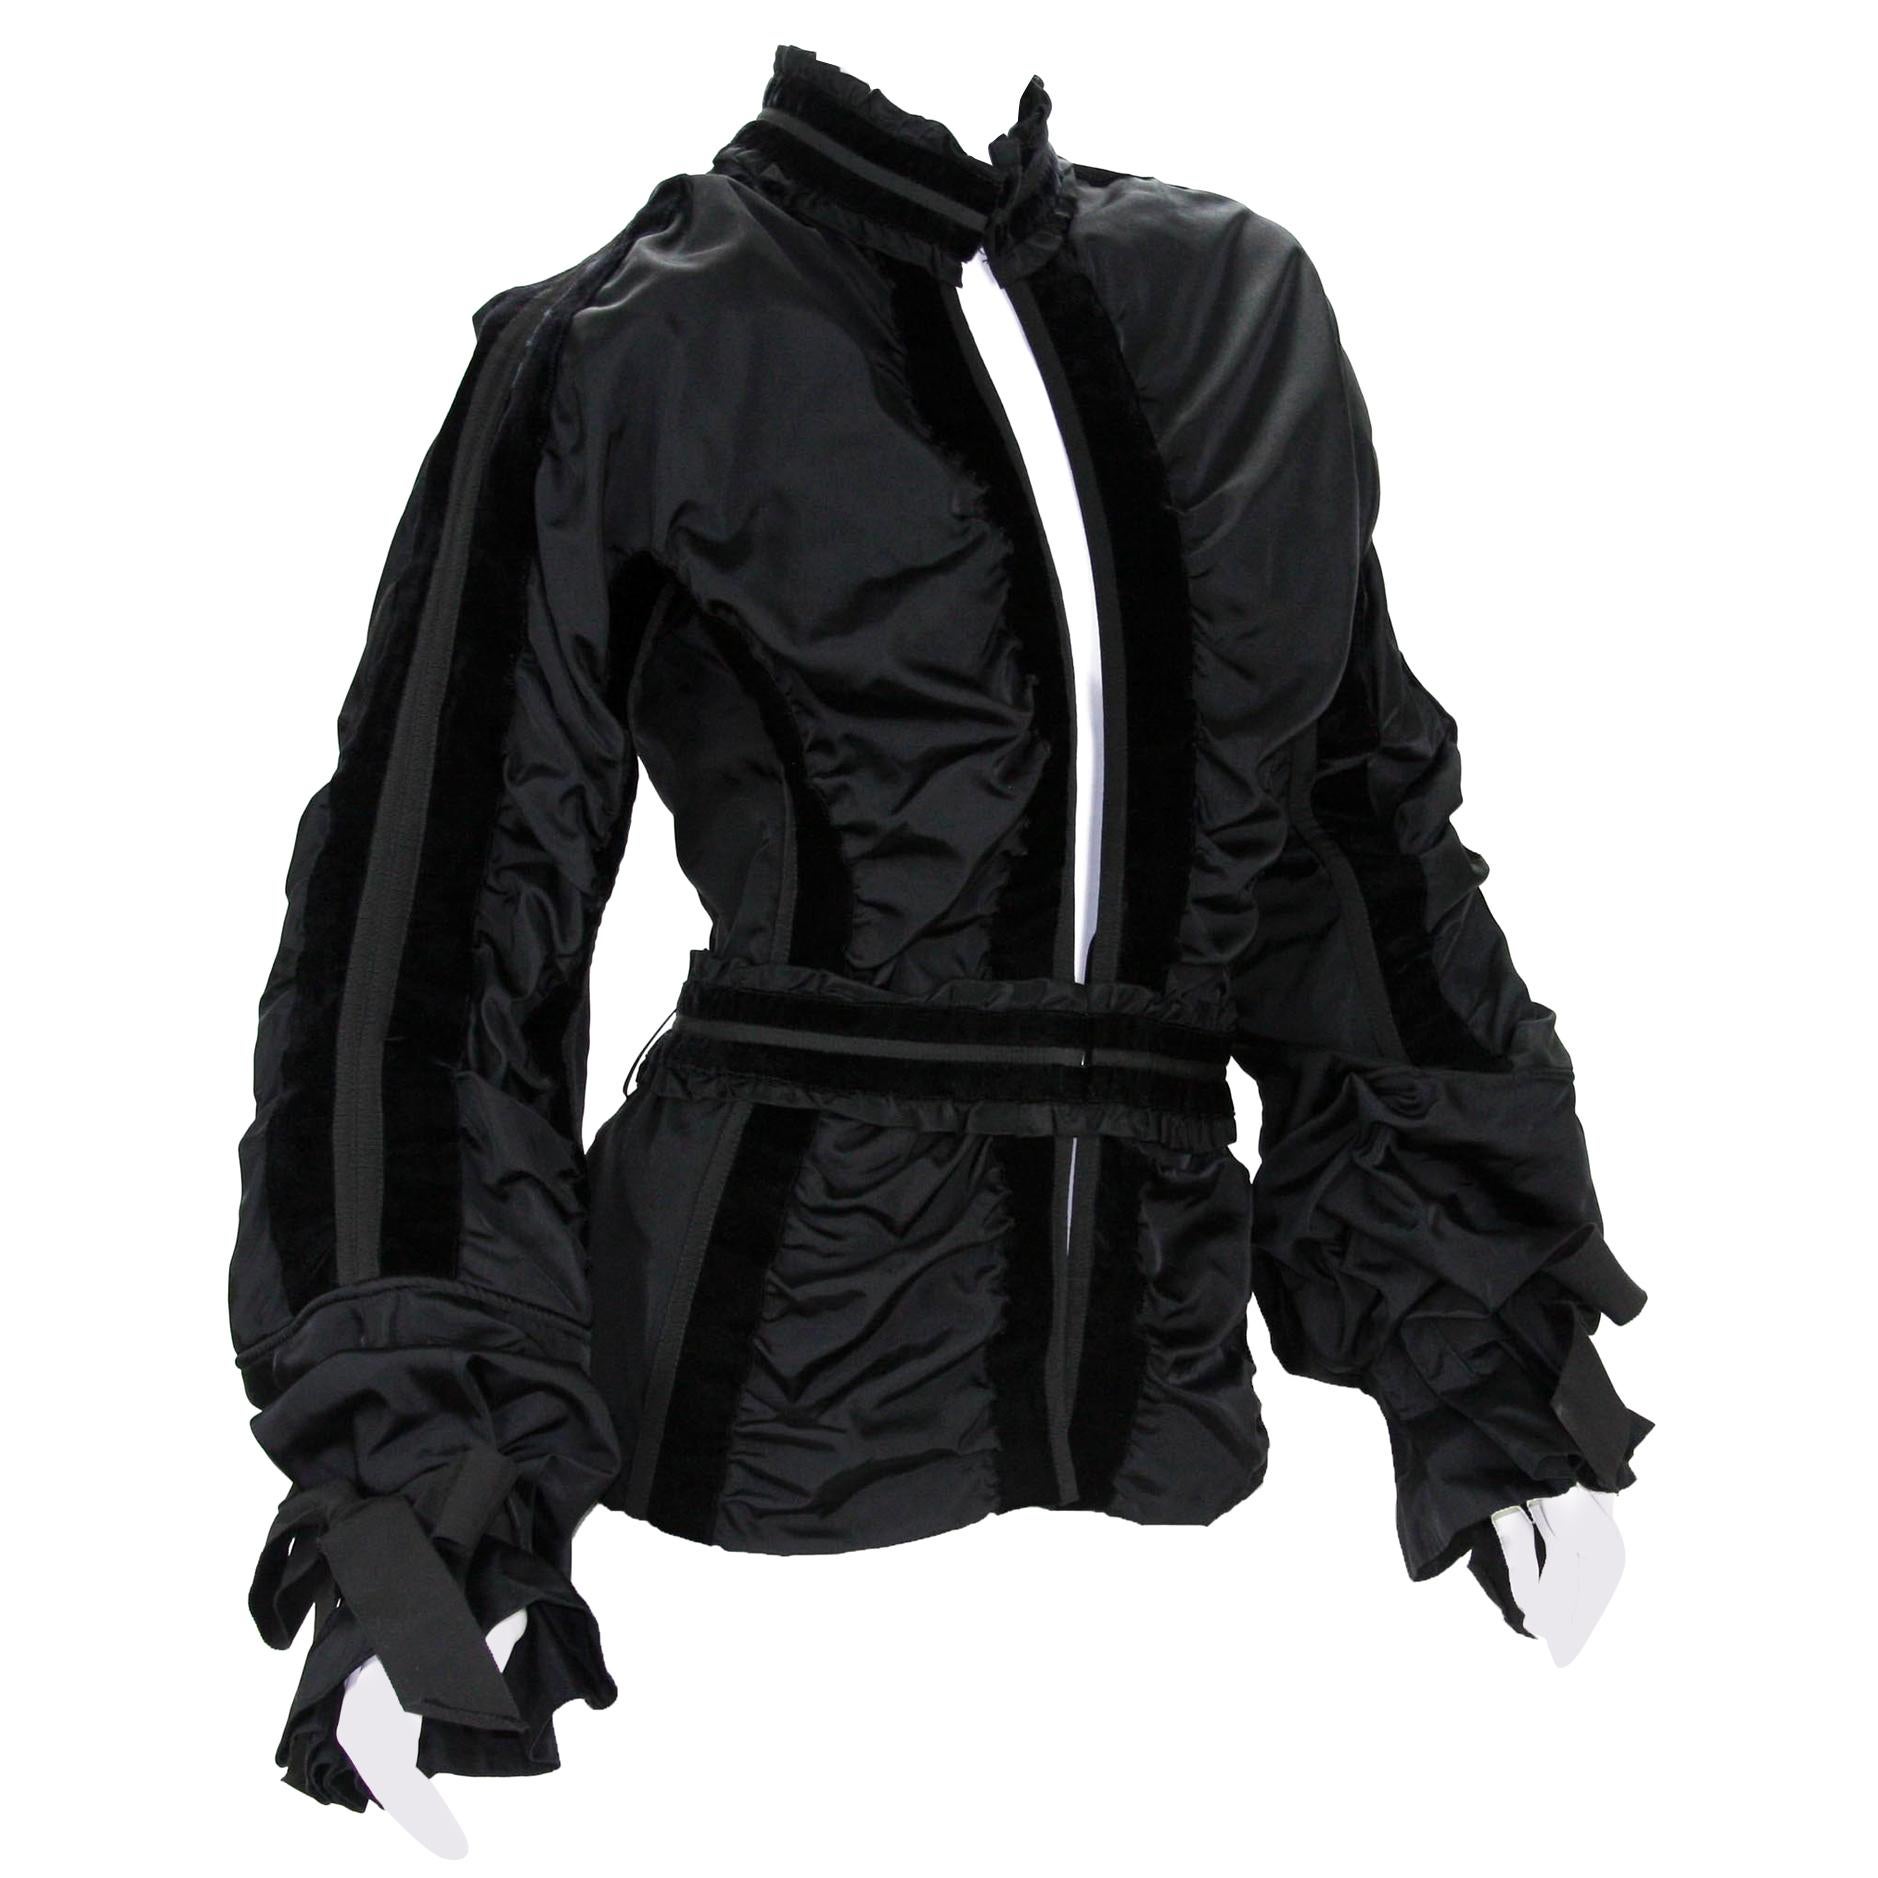 Tom Ford for Yves Saint Laurent FW 2002 Collection Black Taffeta Velvet Jacket 6